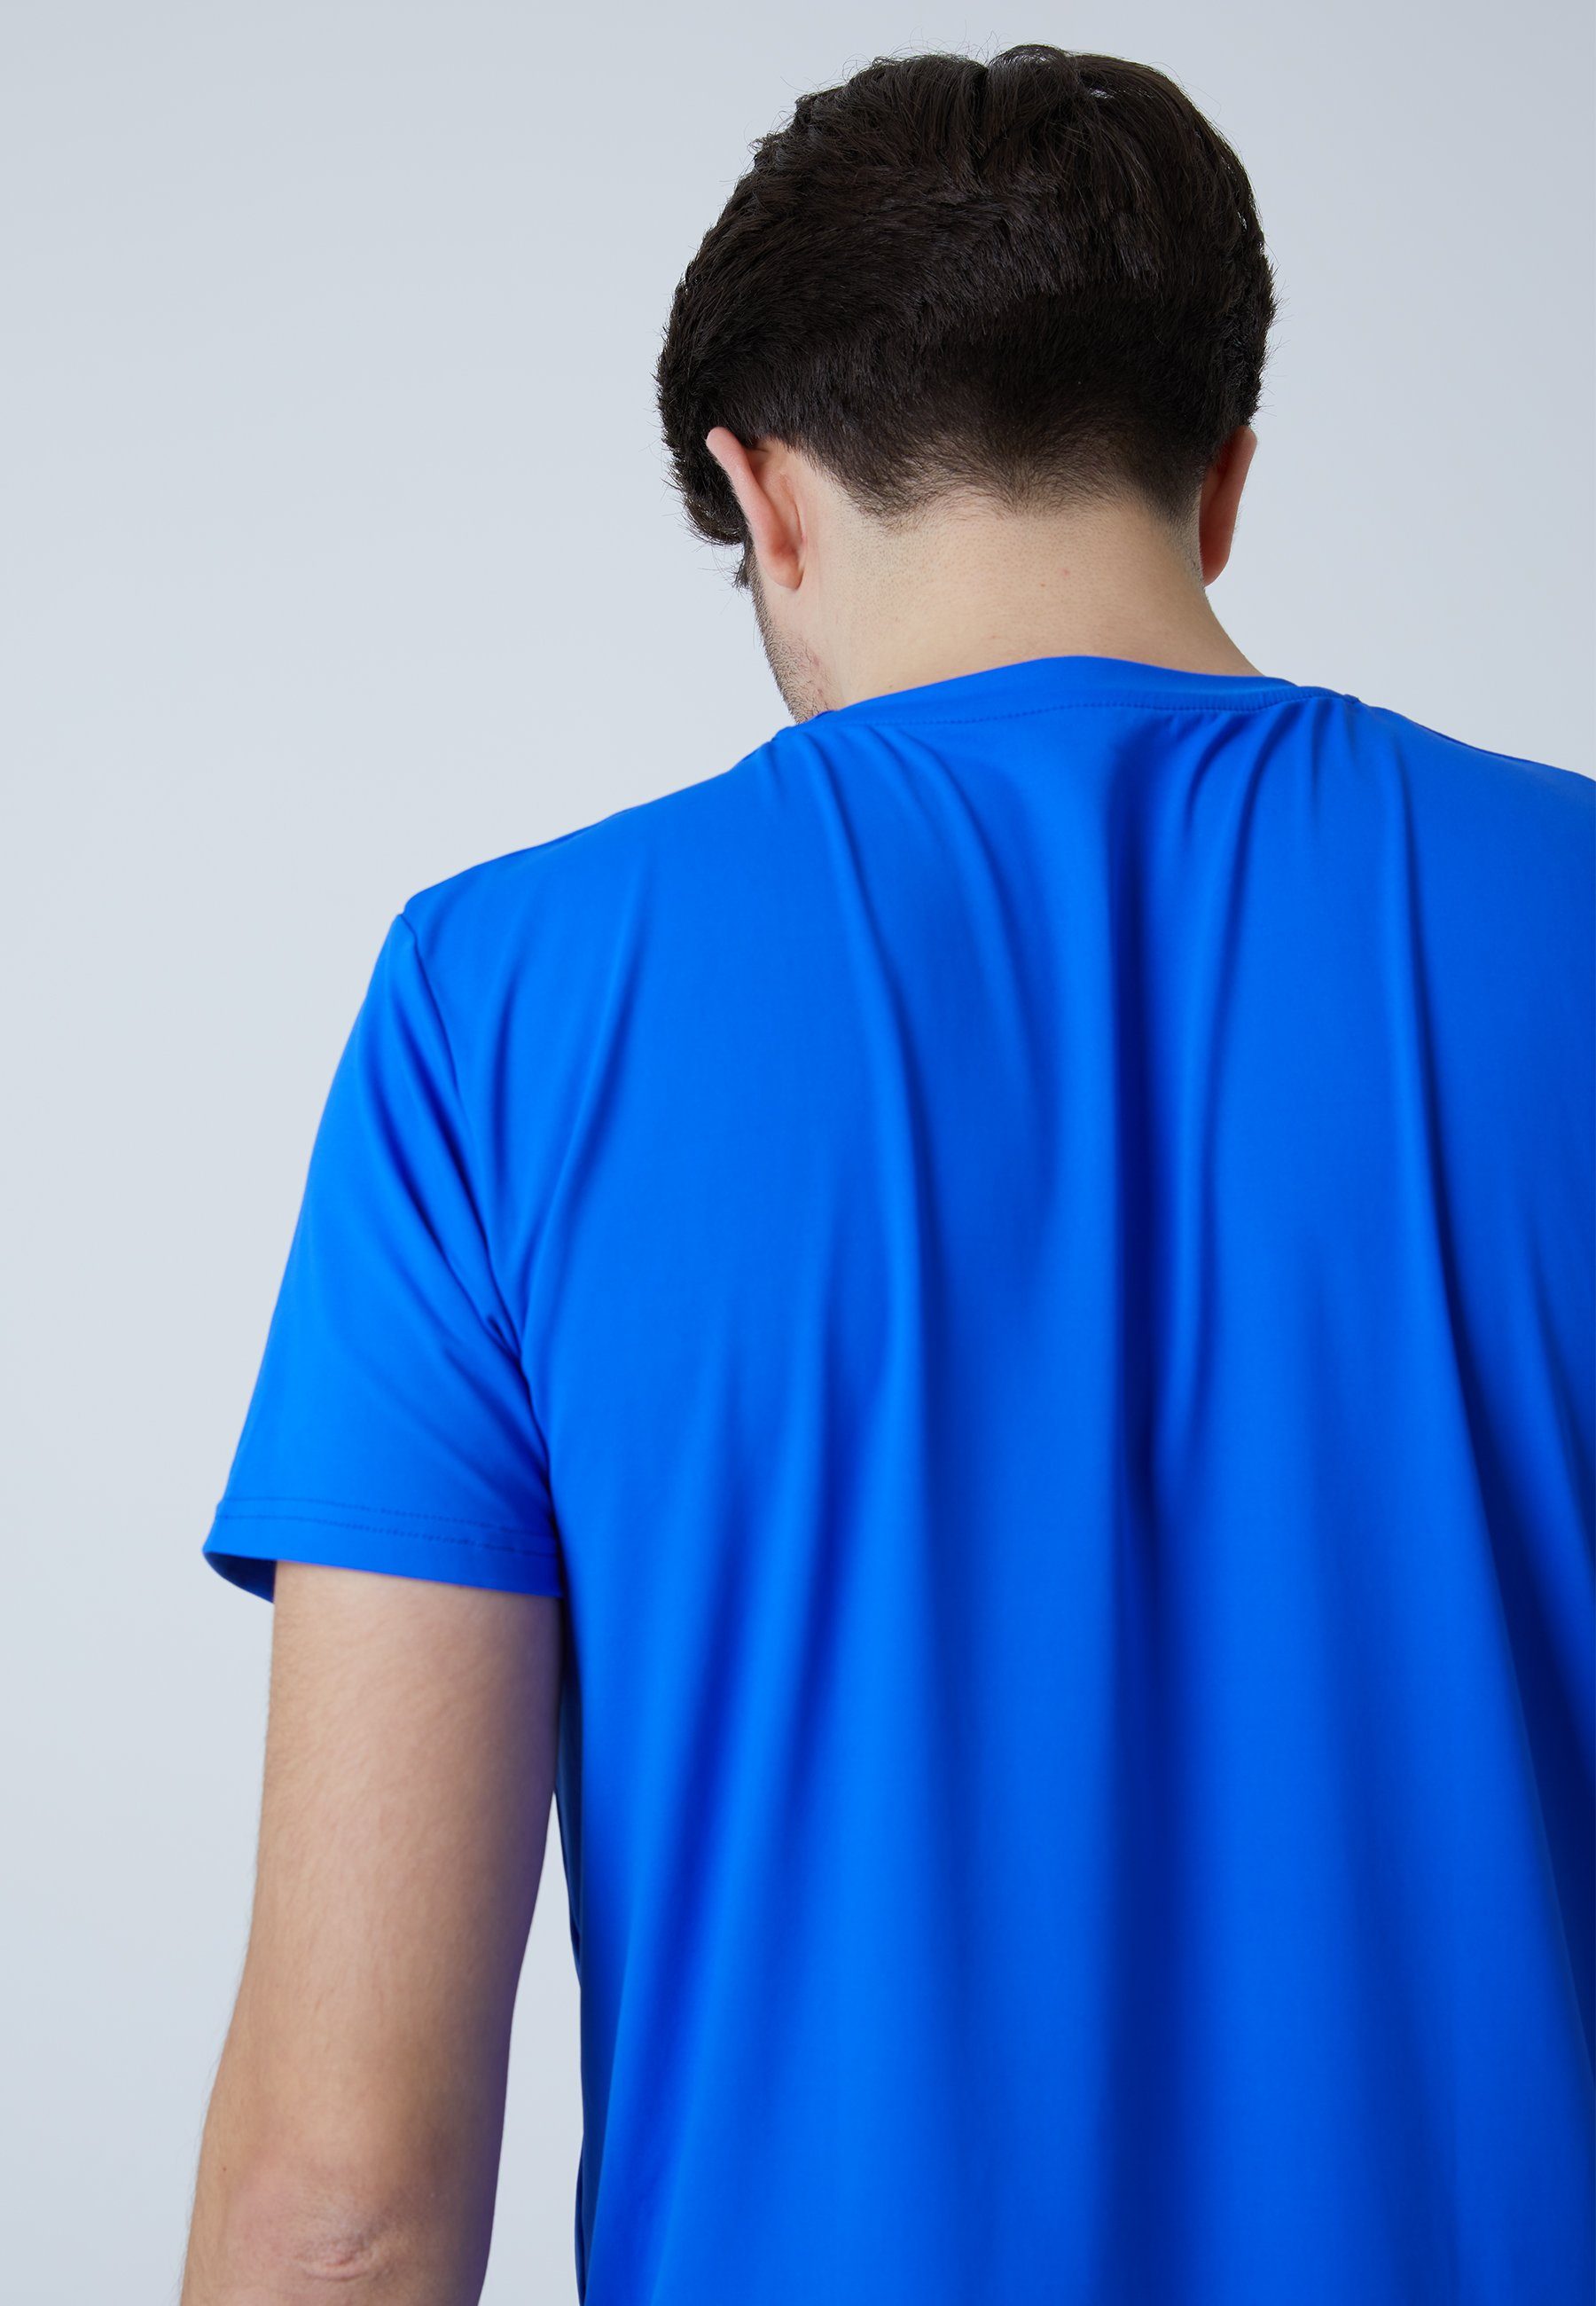 Jungen Tennis T-Shirt Herren Funktionsshirt kobaltblau & Rundhals SPORTKIND